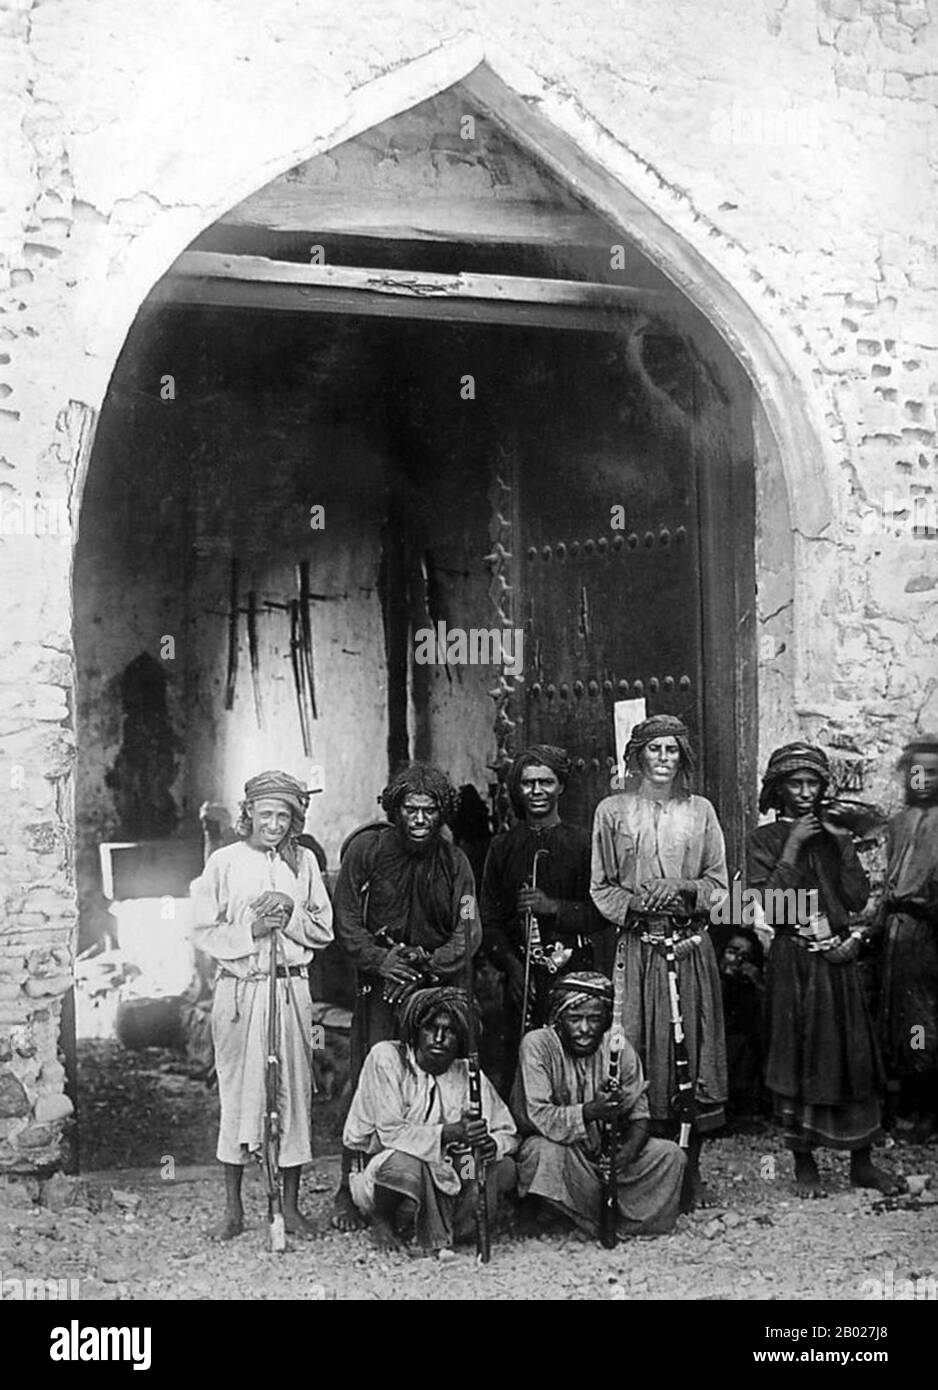 Muscat (arabo: مسقط, Masqaṭ) è la capitale dell'Oman. È anche la sede del governo e la più grande città nel Governatorato di Muscat. Conosciuto fin dai primi anni del 1st secolo come un importante porto commerciale tra l'ovest e l'est, Muscat fu governato da varie tribù indigene, nonché da potenze straniere come i Persiani e l'Impero Portoghese in vari punti della sua storia. Una potenza militare regionale nel 18th secolo, l'influenza di Muscat si estese fino all'Africa orientale e a Zanzibar. Come importante città portuale nel Golfo di Oman, Muscat attirò commercianti e coloni stranieri come Foto Stock